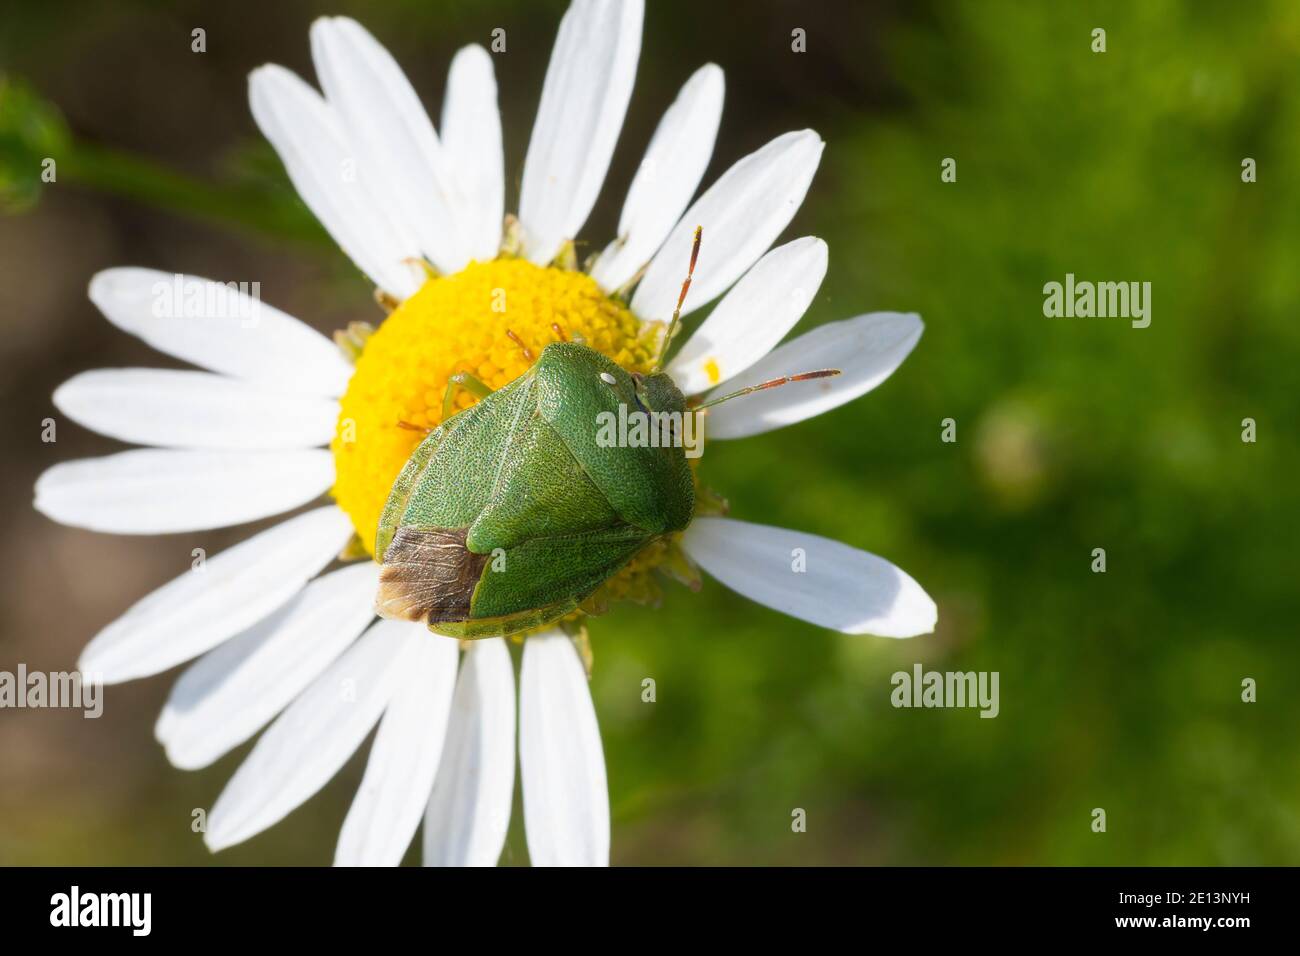 Stinkwanze, Grüne Stinkwanze, Palomena viridissima, shield bug Stock Photo